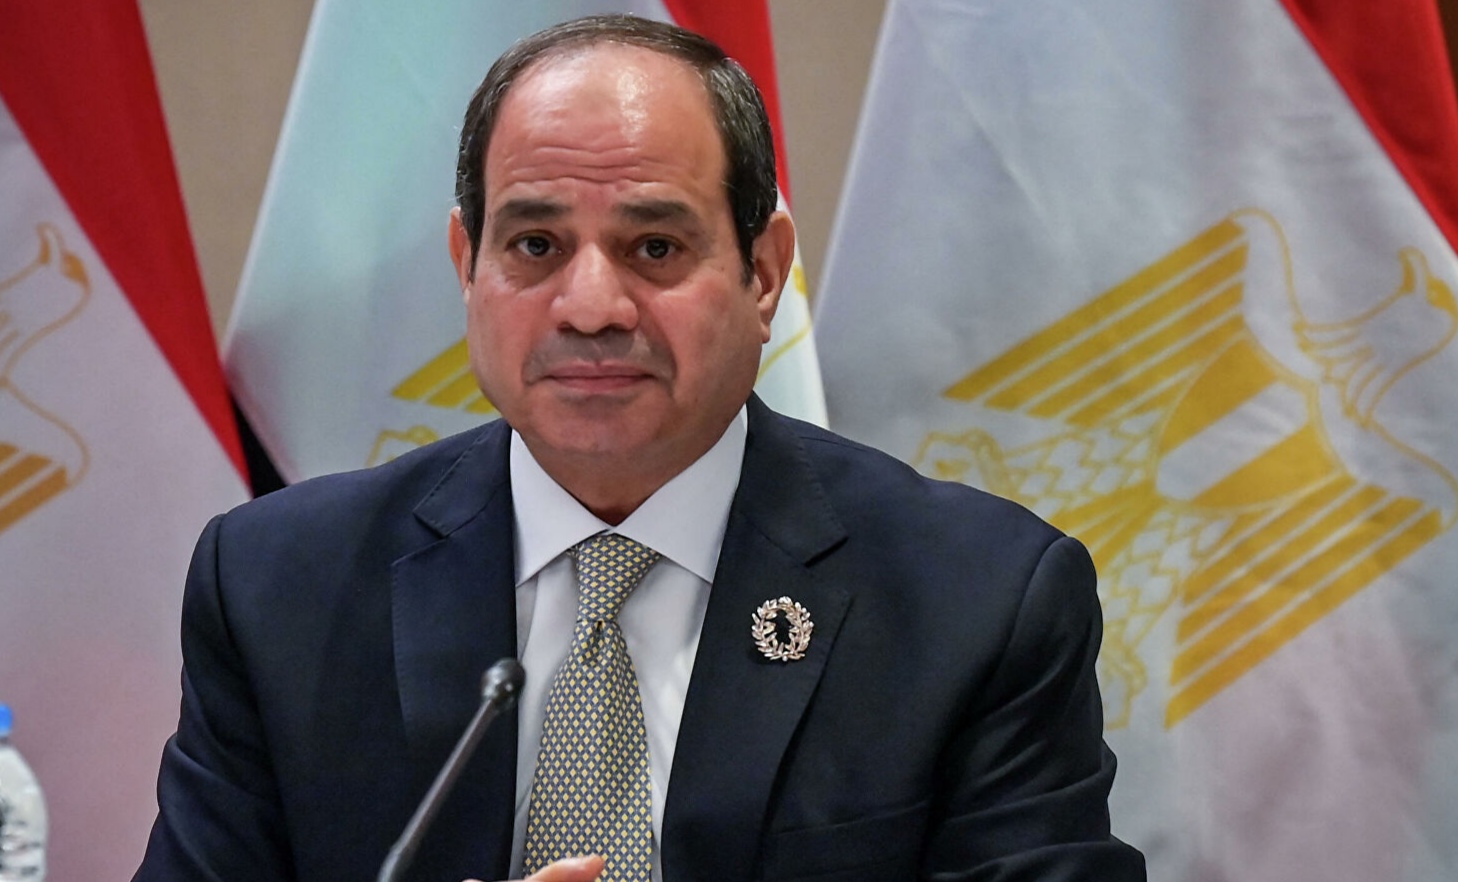 السيسي يُحدّد "ثوابت مصر" تجاه القضية الفلسطينية